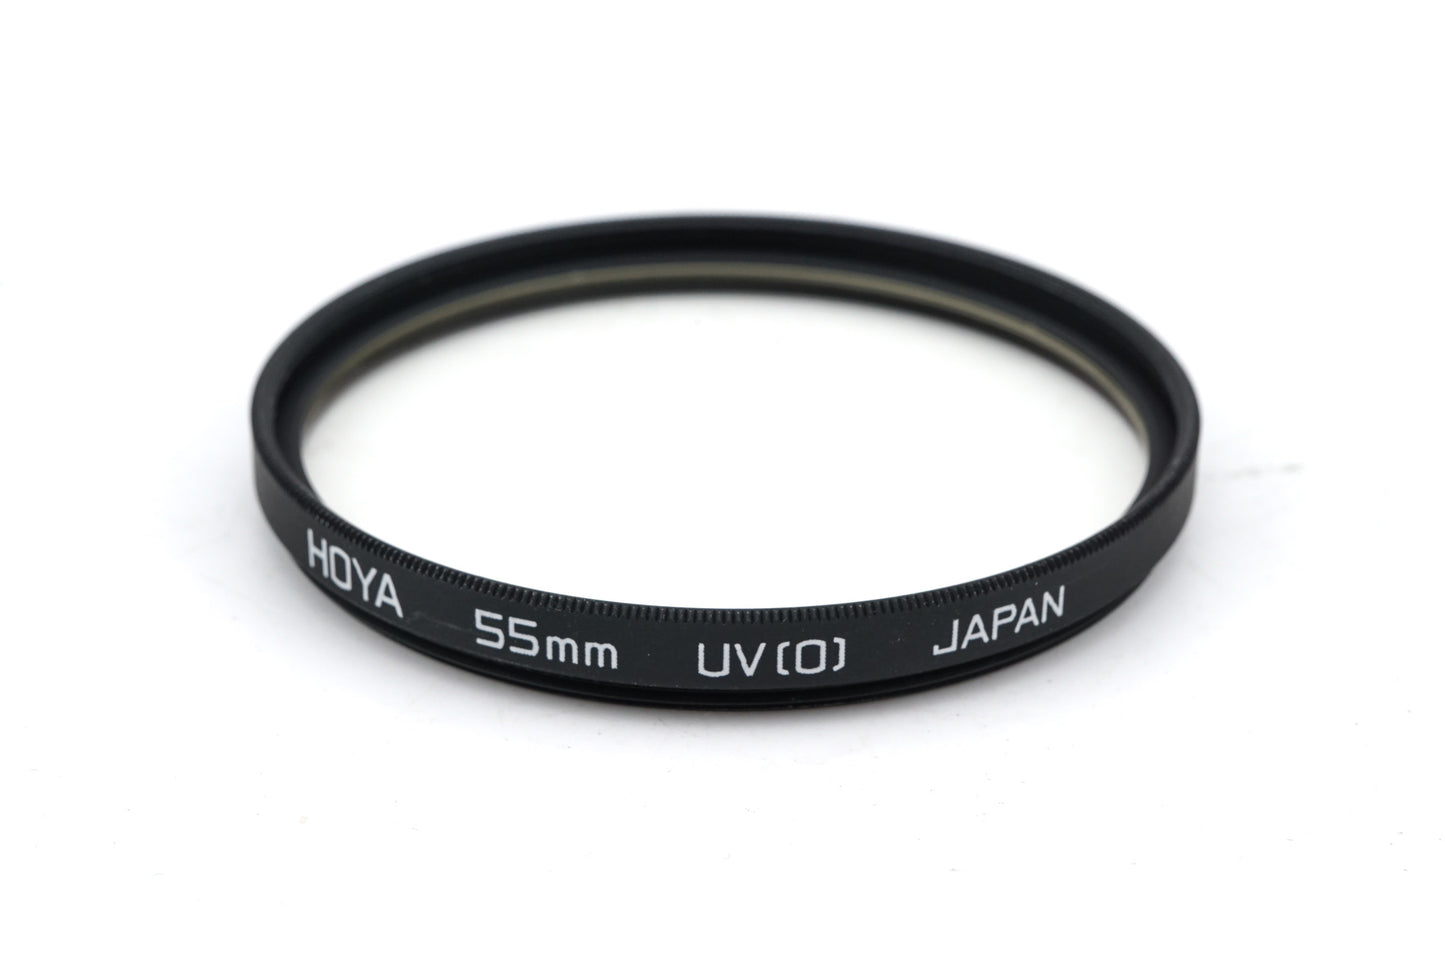 Hoya 55mm UV(O) Filter - Accessory